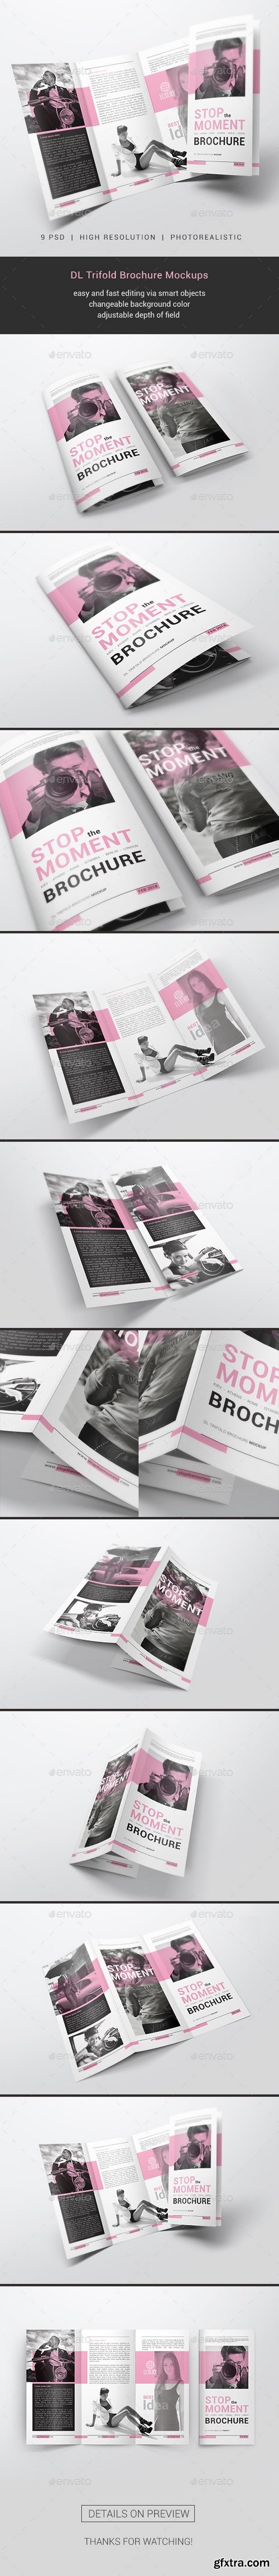 Graphicriver - DL Trifold Brochure Mockups 21289220